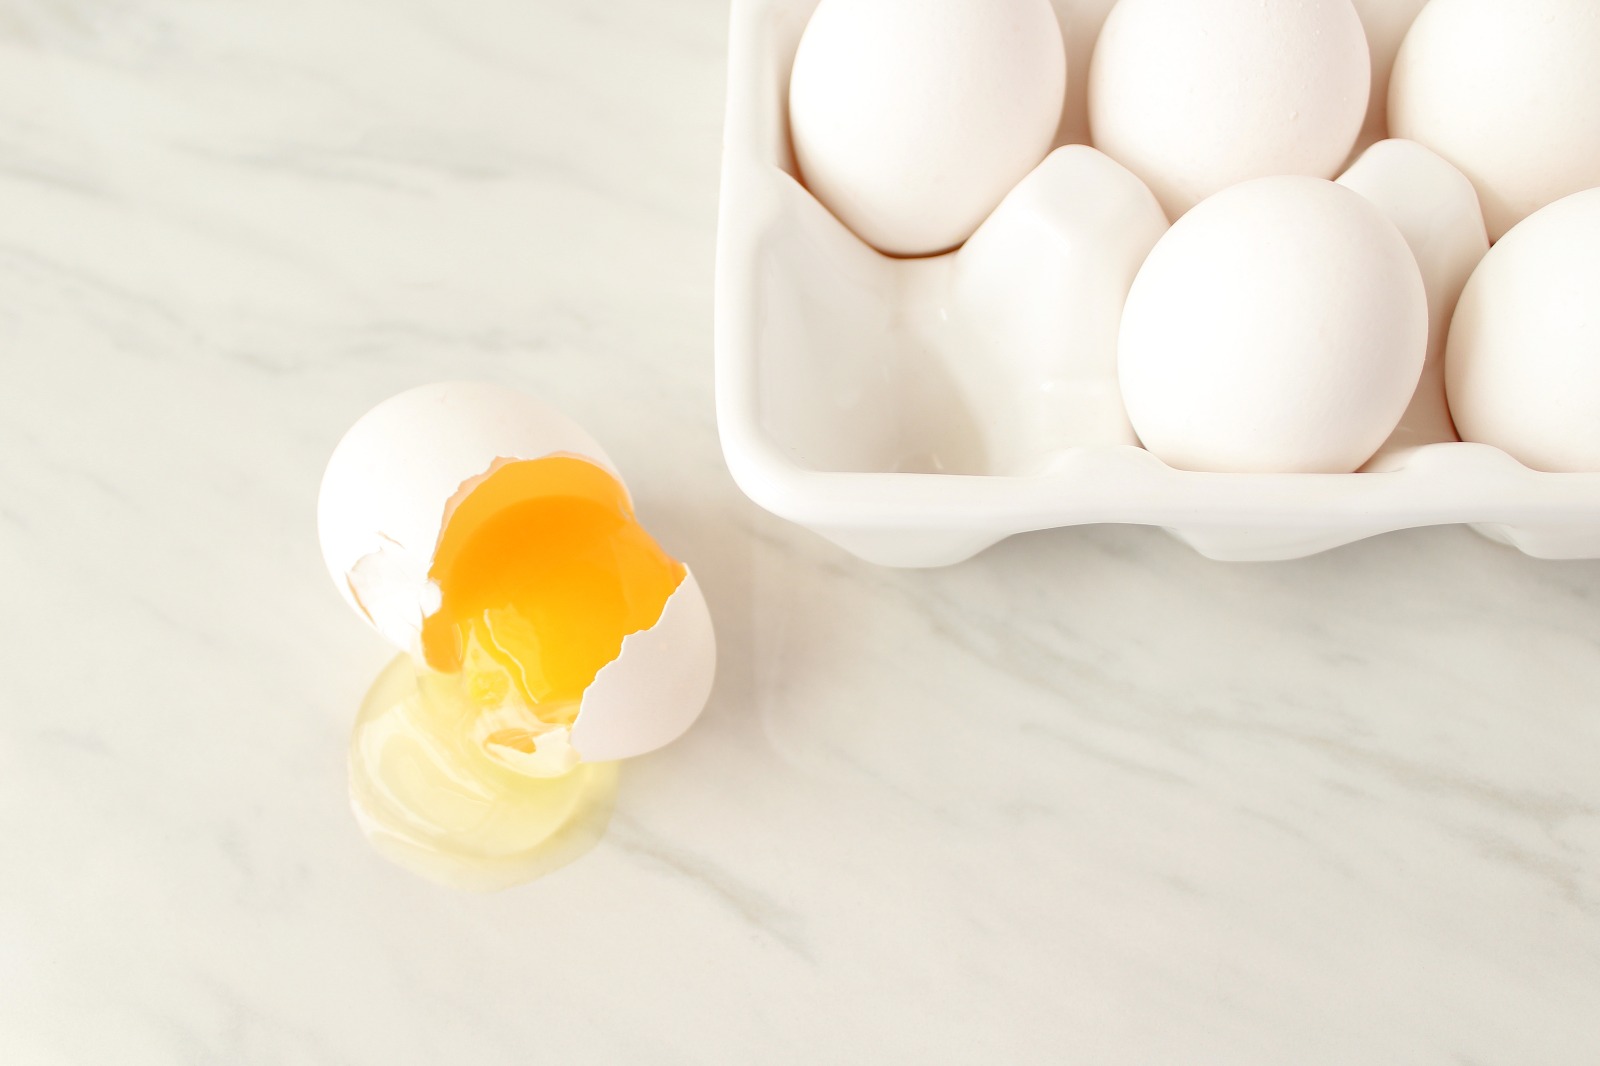 Bir Yumurtanın Organik Olup Olmadığı Nasıl Anlaşılır?